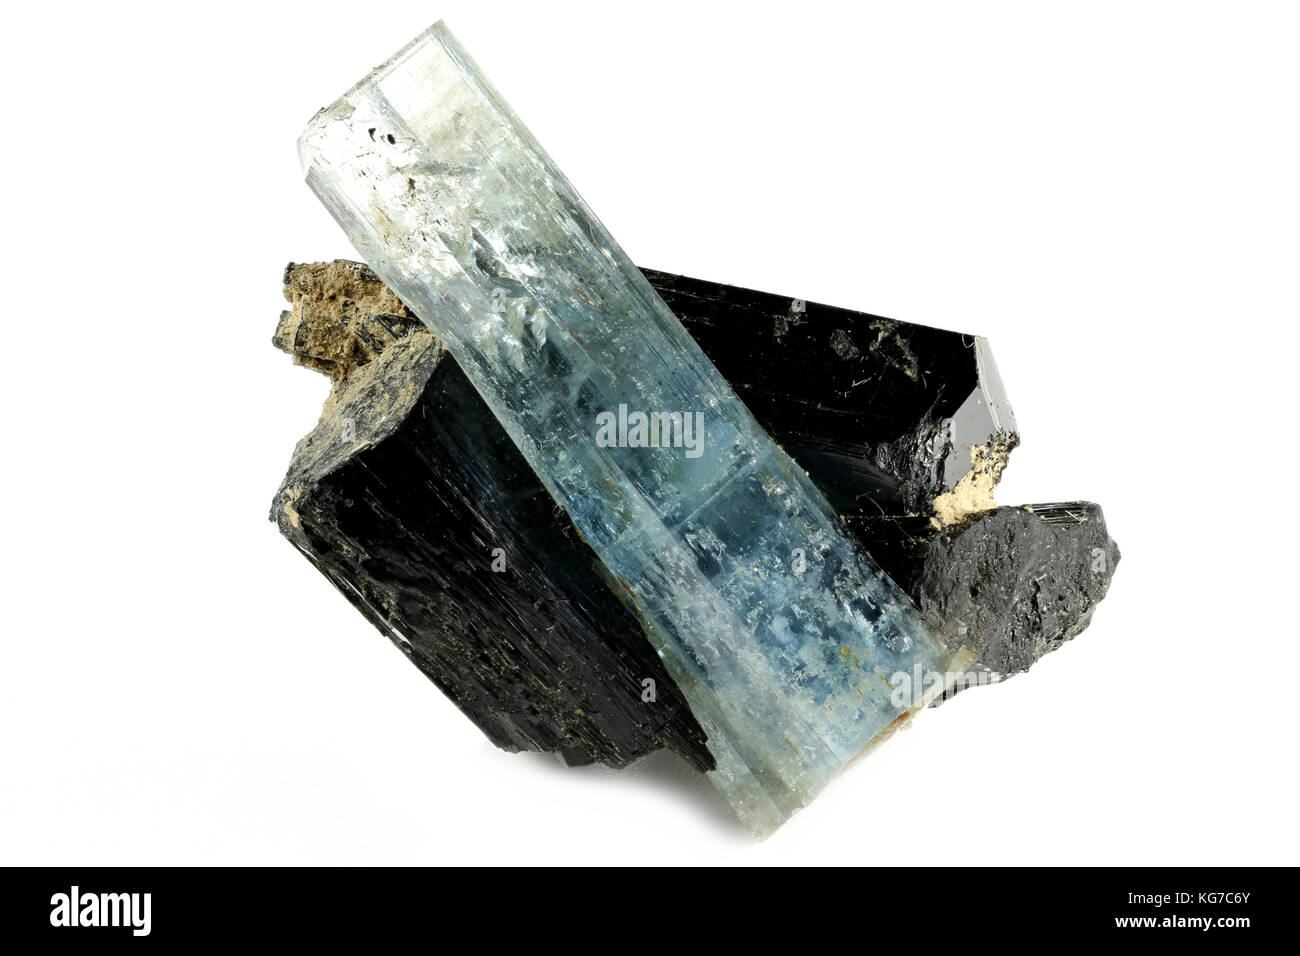 L'aquamarine cristal avec schorl de/ Namibie erongo isolé sur fond blanc Banque D'Images